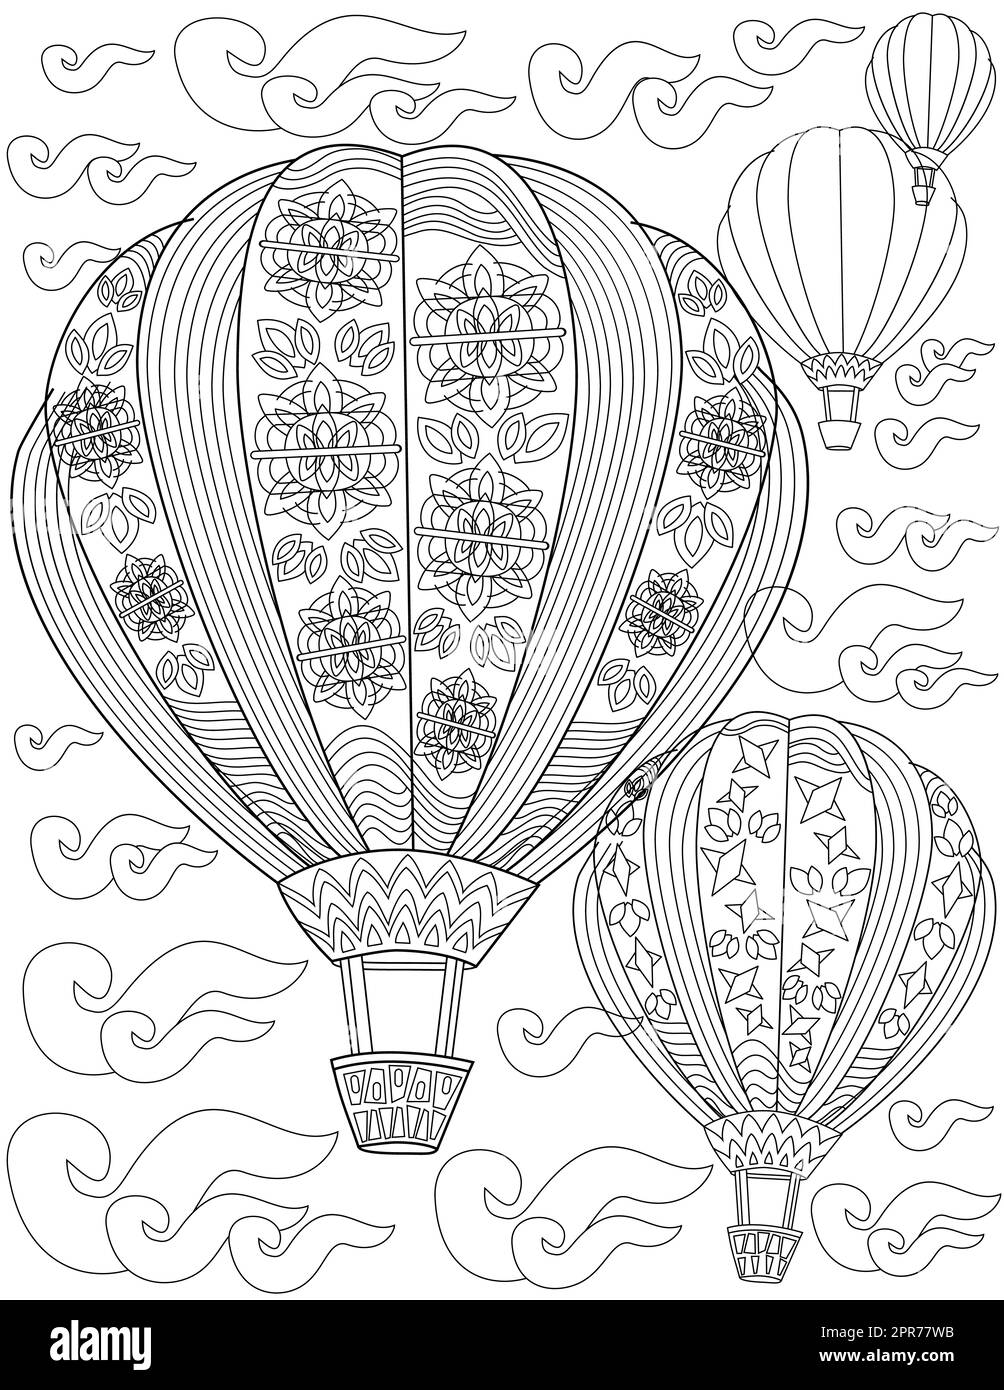 Pagina del libro da colorare con mongolfiere con disegni floreali in volo nel cielo. Foglio da colorare con palloncini floreali vuoti nelle nuvole. Dirigibili che salgono. Foto Stock